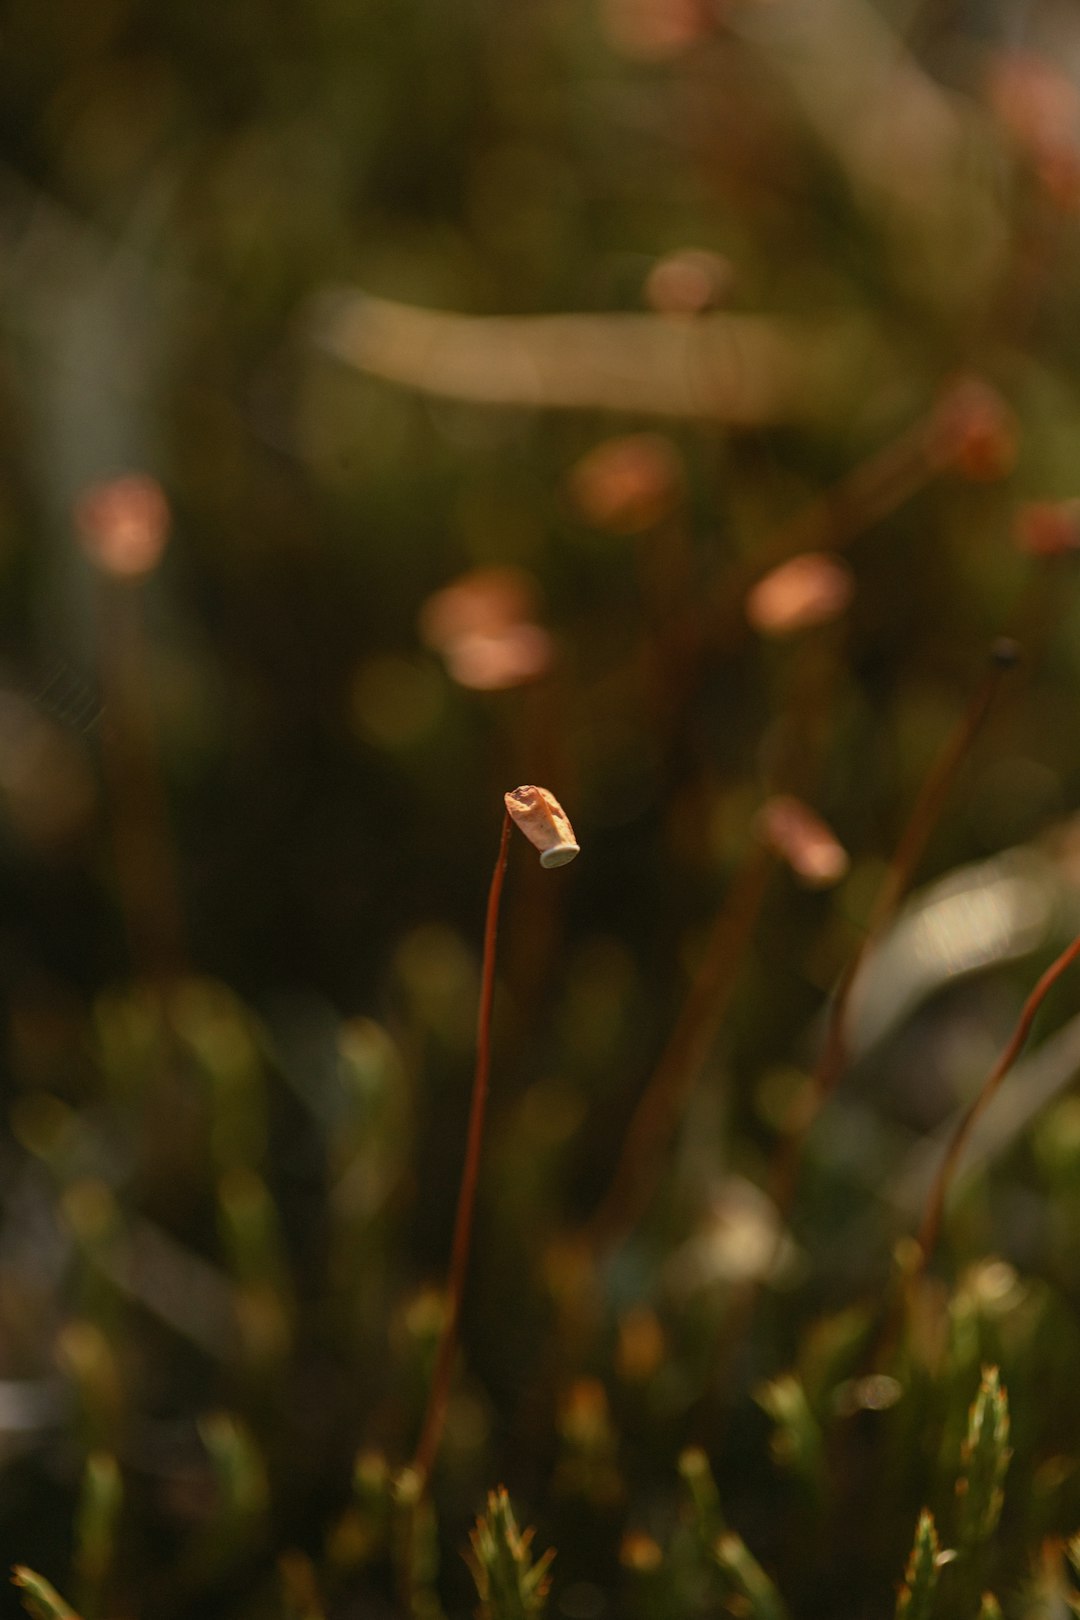 white and brown flower bud in tilt shift lens